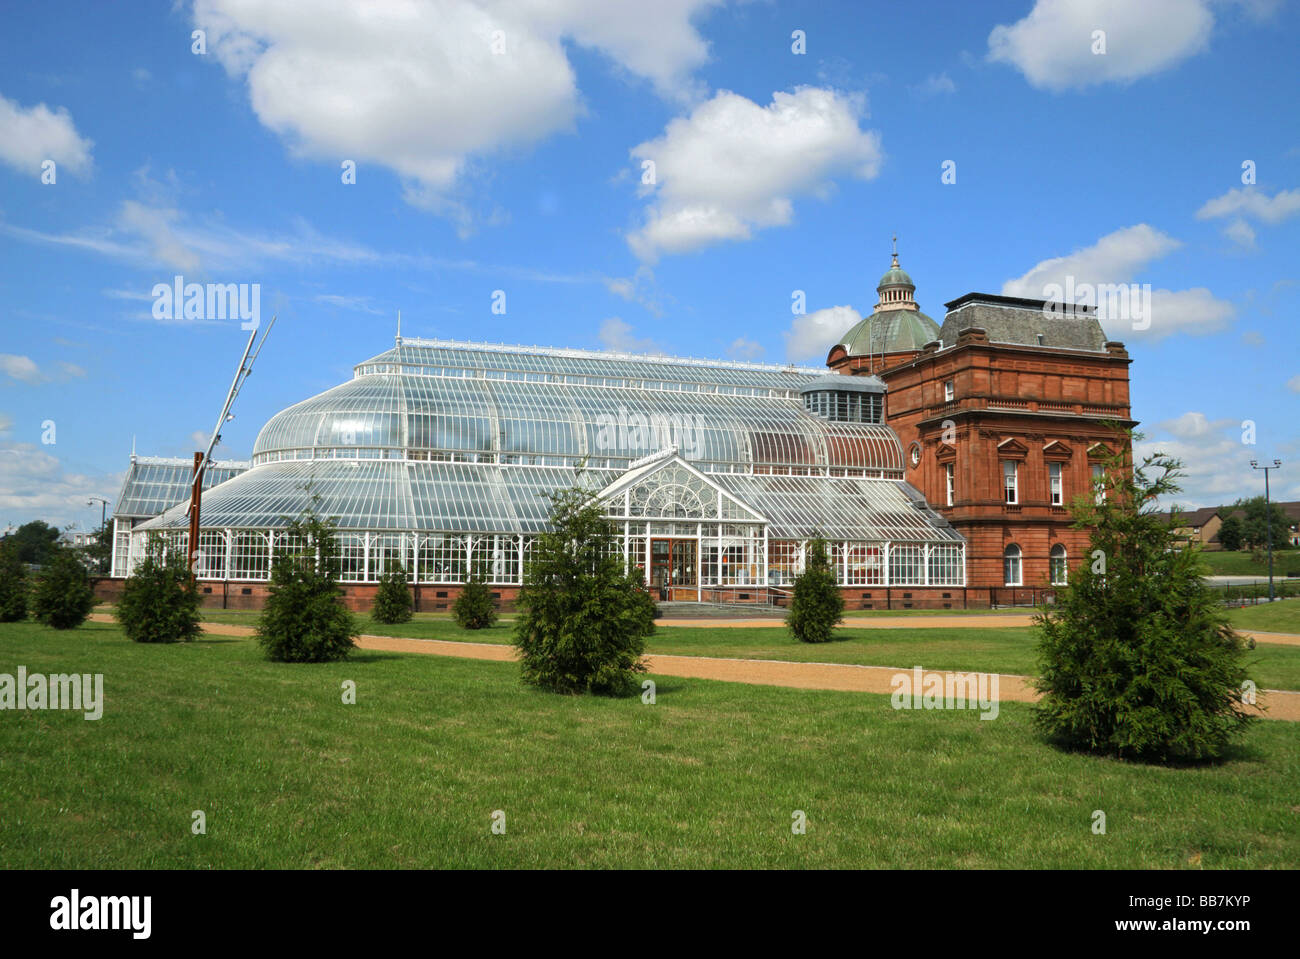 Peoples Palace Strathclyde Glasgow Schottland mit botanischen Garten Gewächshaus Stockfoto